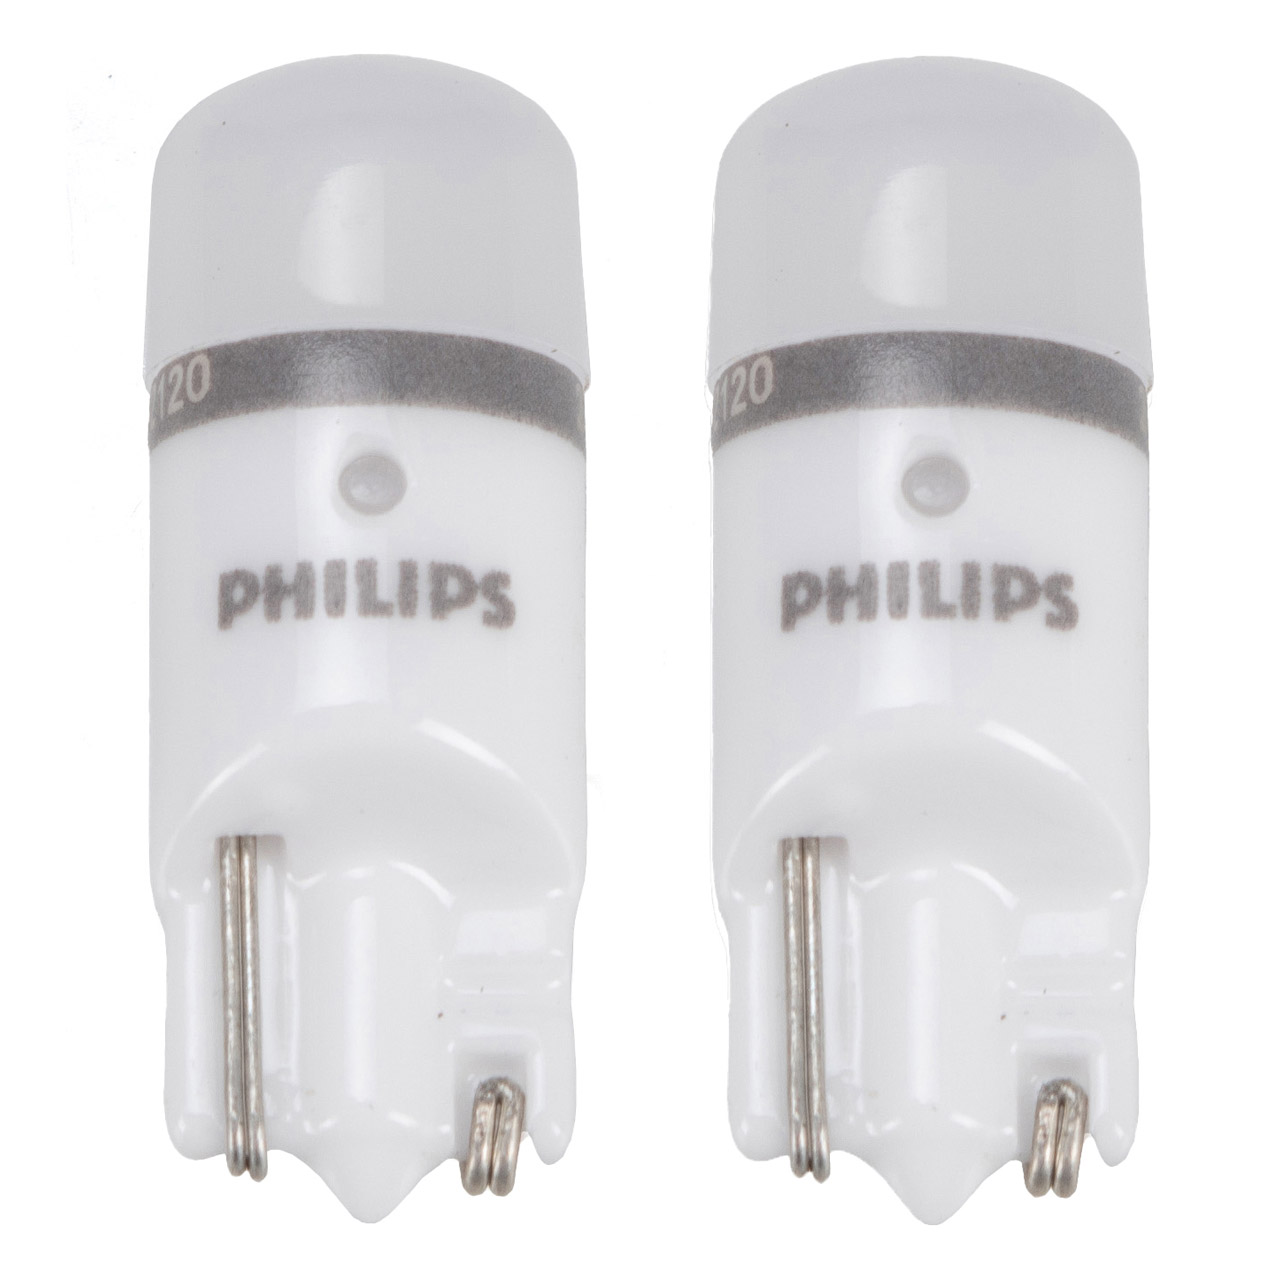 PHILIPS Halogenlampen / Glühlampen / LEDs - 11972U6000X2, 11179X2 